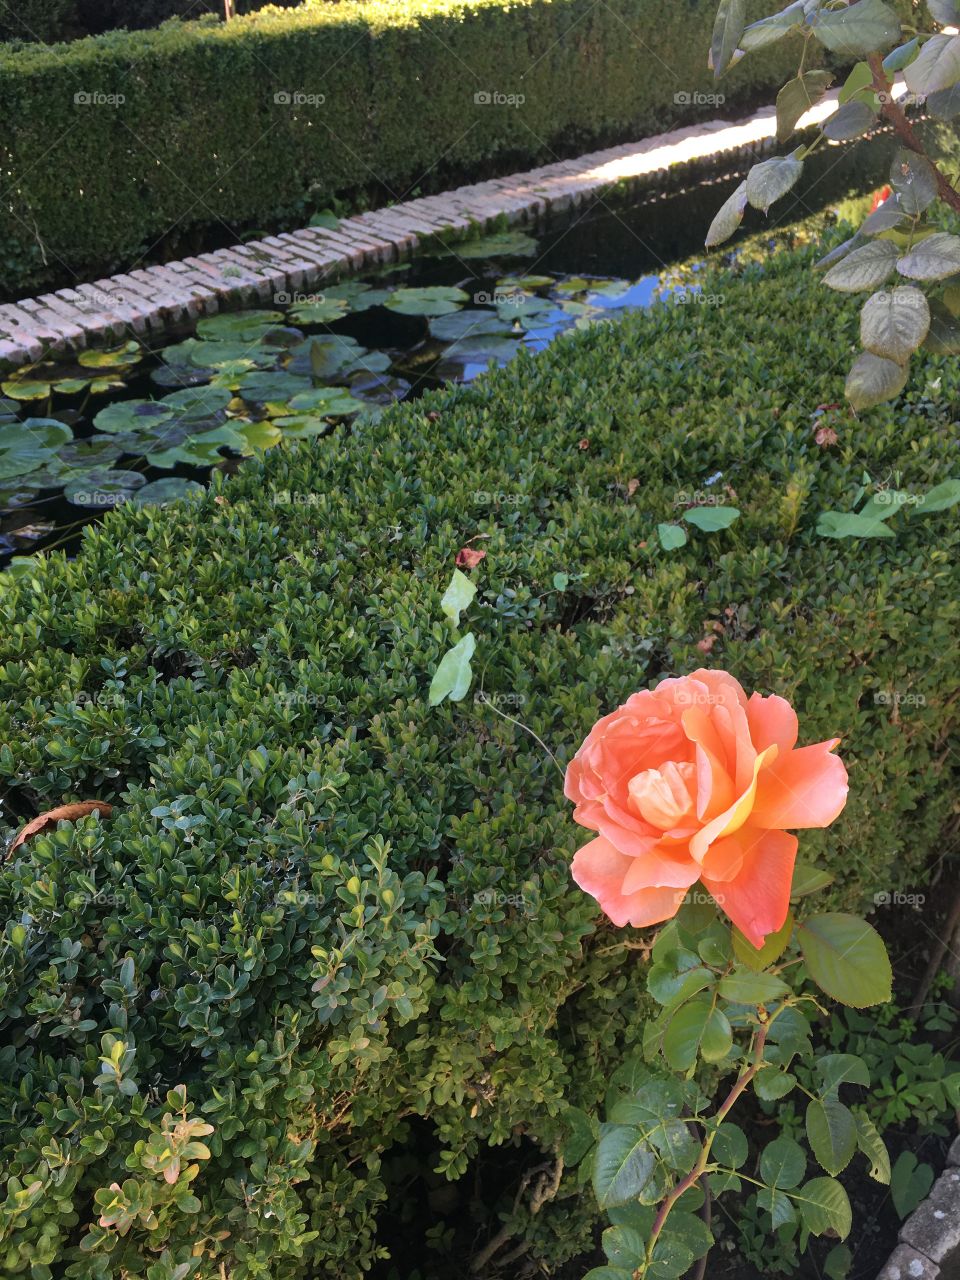 An English rose in a Spanish garden 